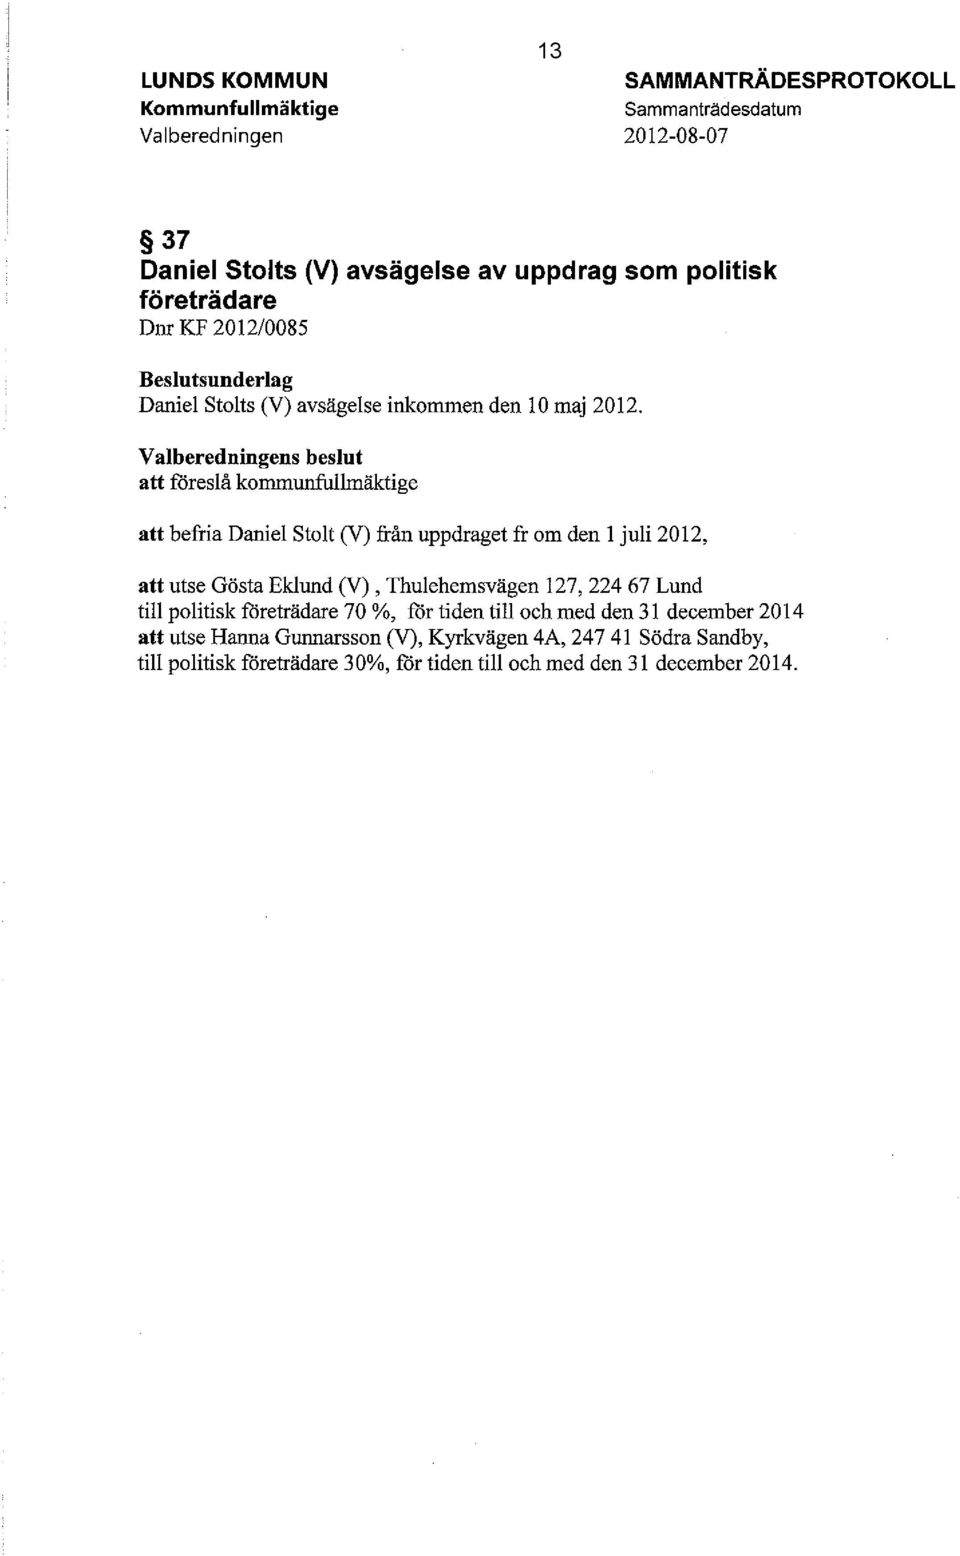 Valberedningens beslut att föreslå kommunfullmäktige att befria Daniel Stolt (V) från uppdraget fr om den l juli 2012, att utse Gösta Eklund (V), Thulehemsvägen